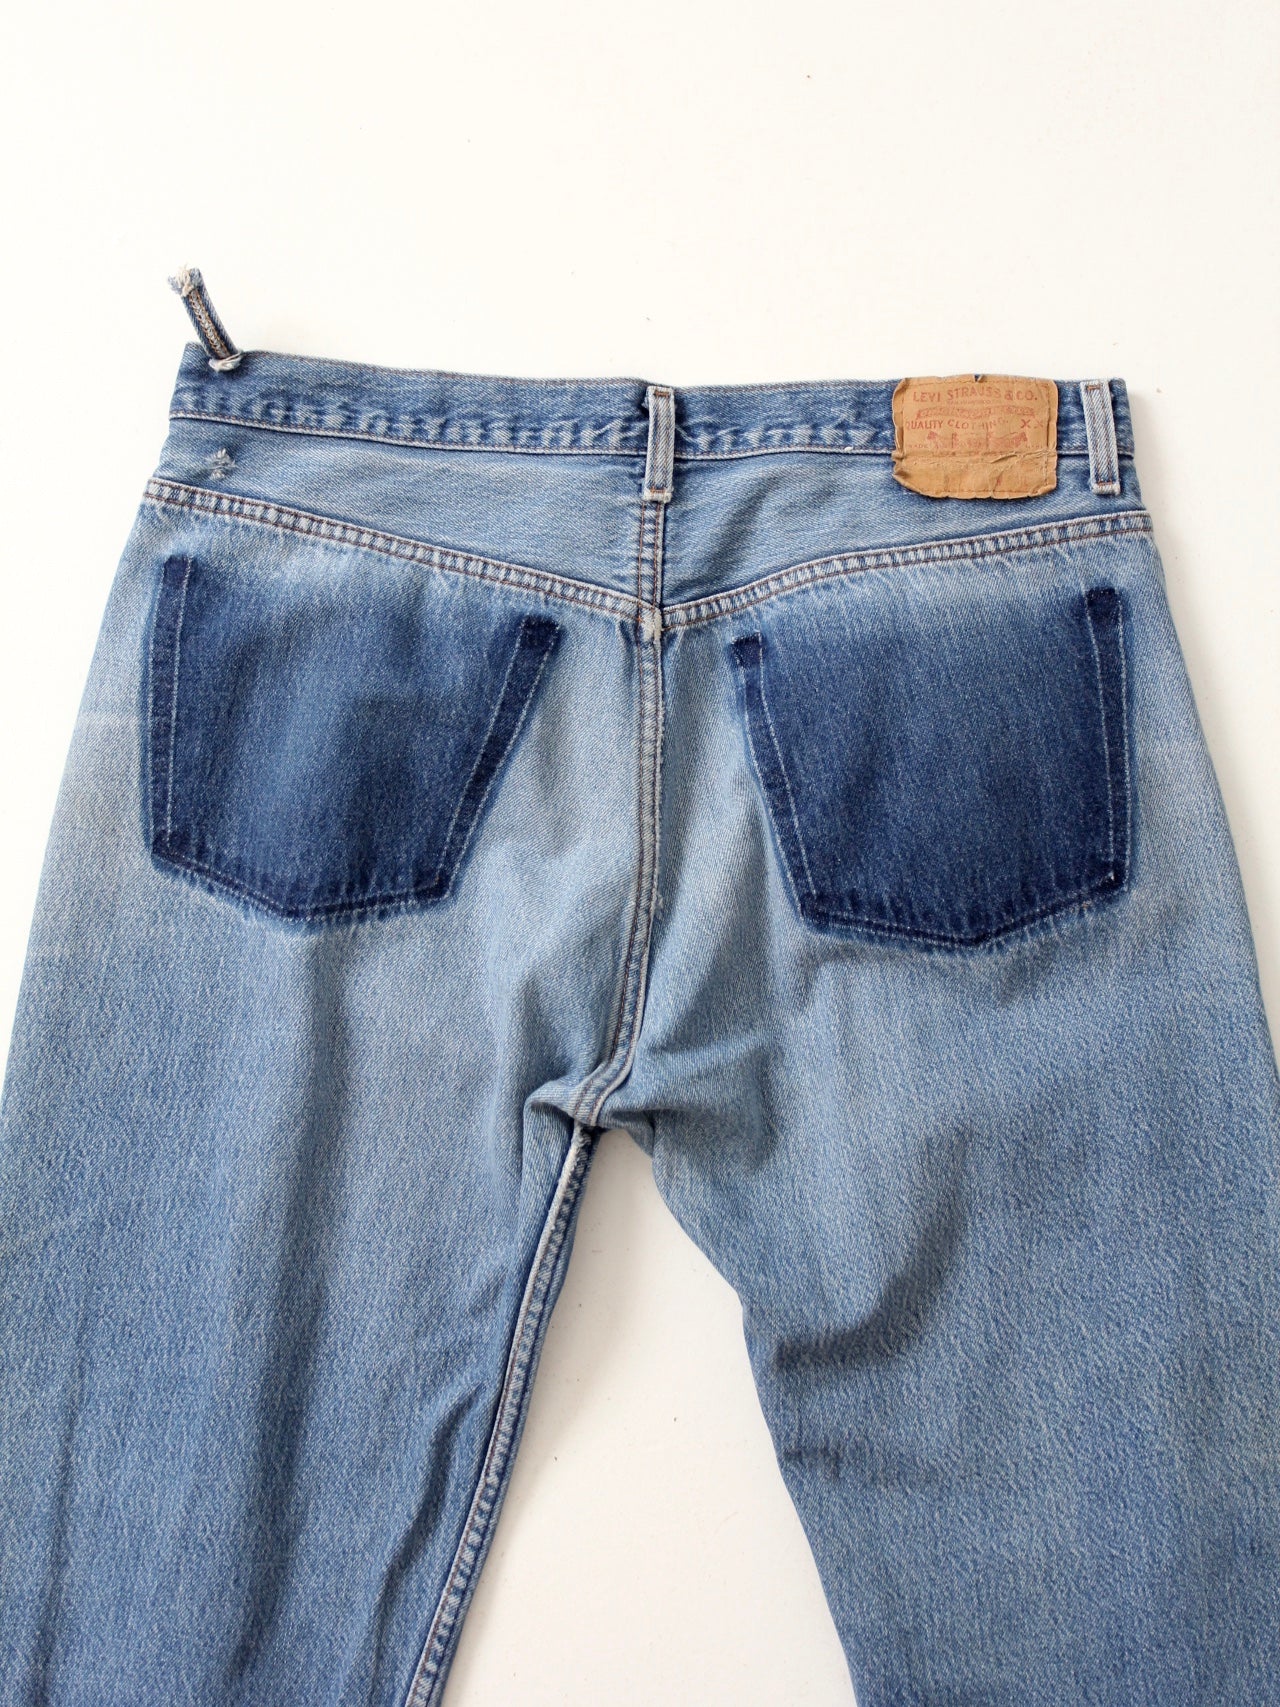 vintage Levis 501 jeans, 36 x 28 – 86 Vintage